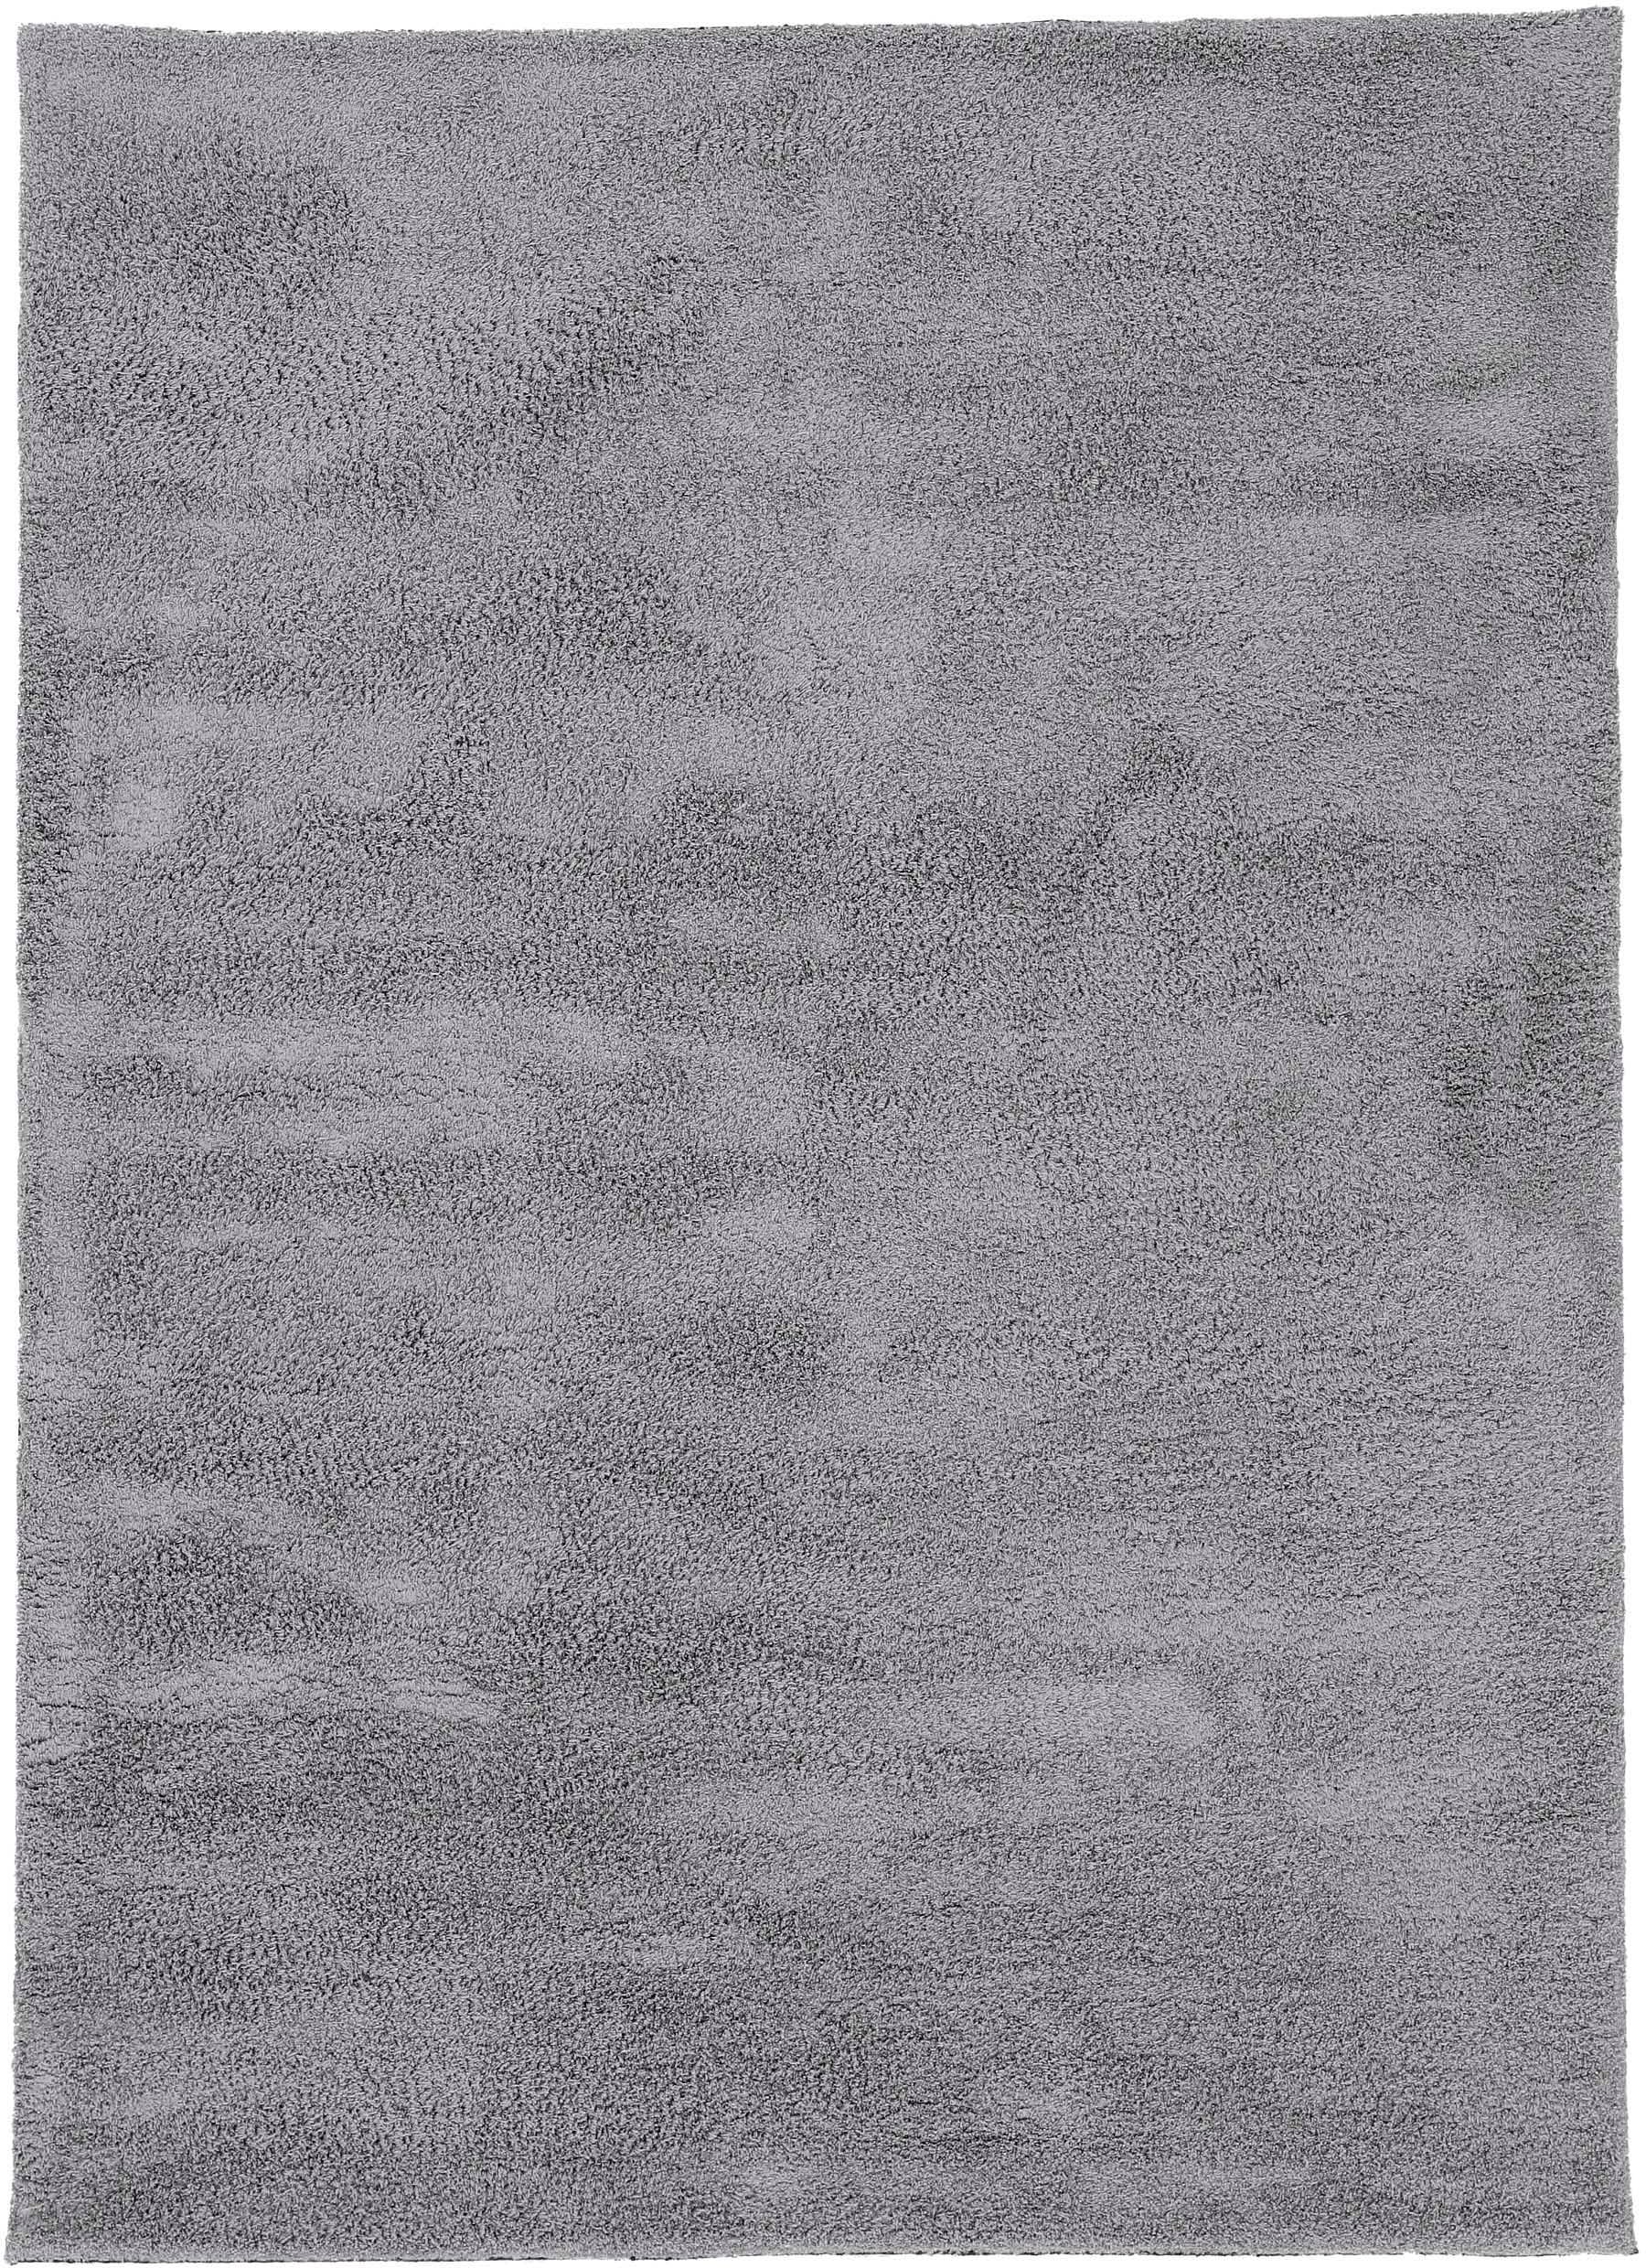 carpetfine Hochflor-Teppich »Silky«, rechteckig, Shaggy, Langflor, uni, besonders weich, handarbeit